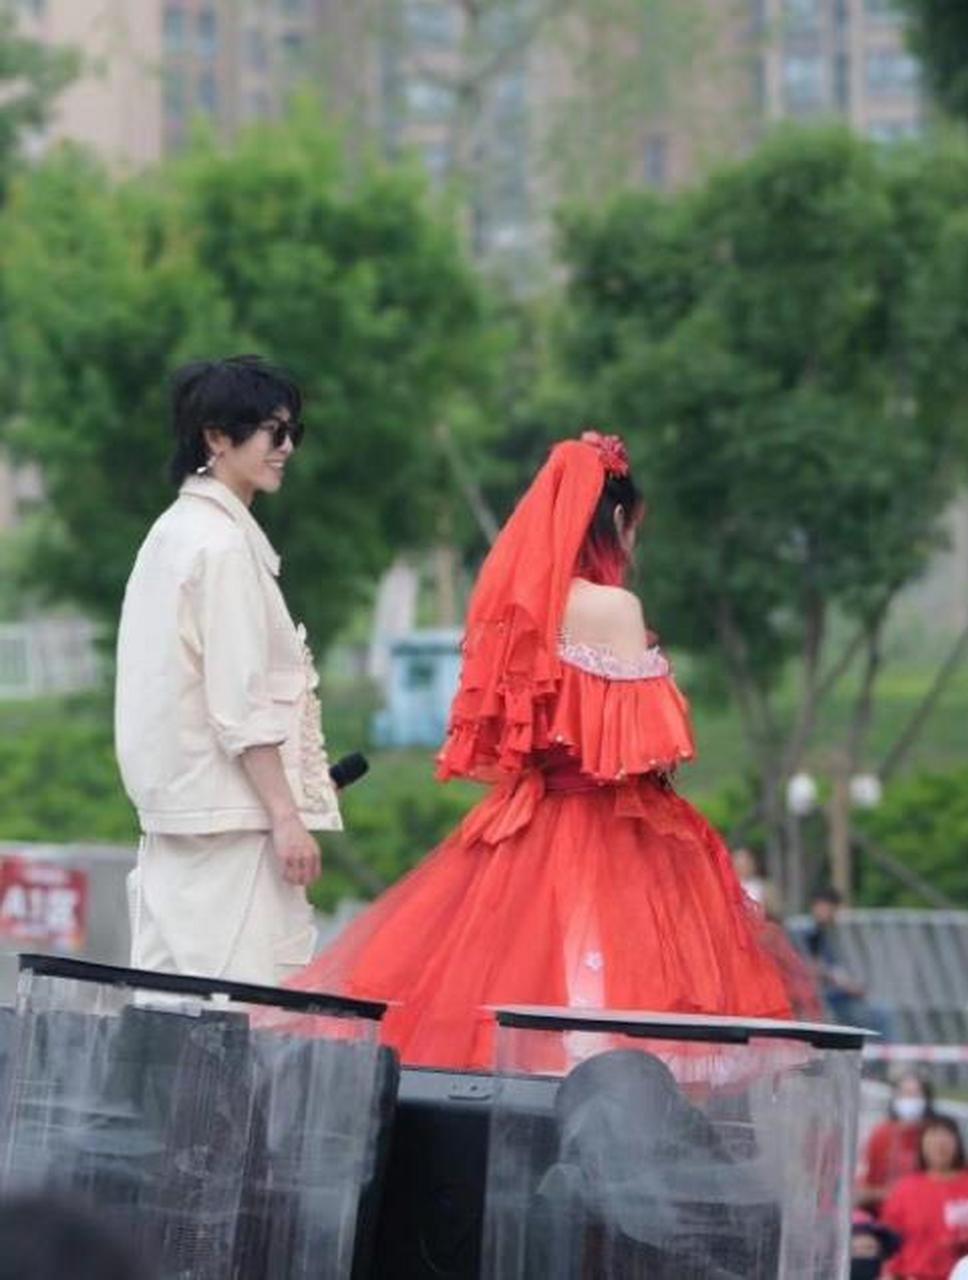 华晨宇火星演唱会:一位神秘女子身着红色婚纱,与偶像同台演出!